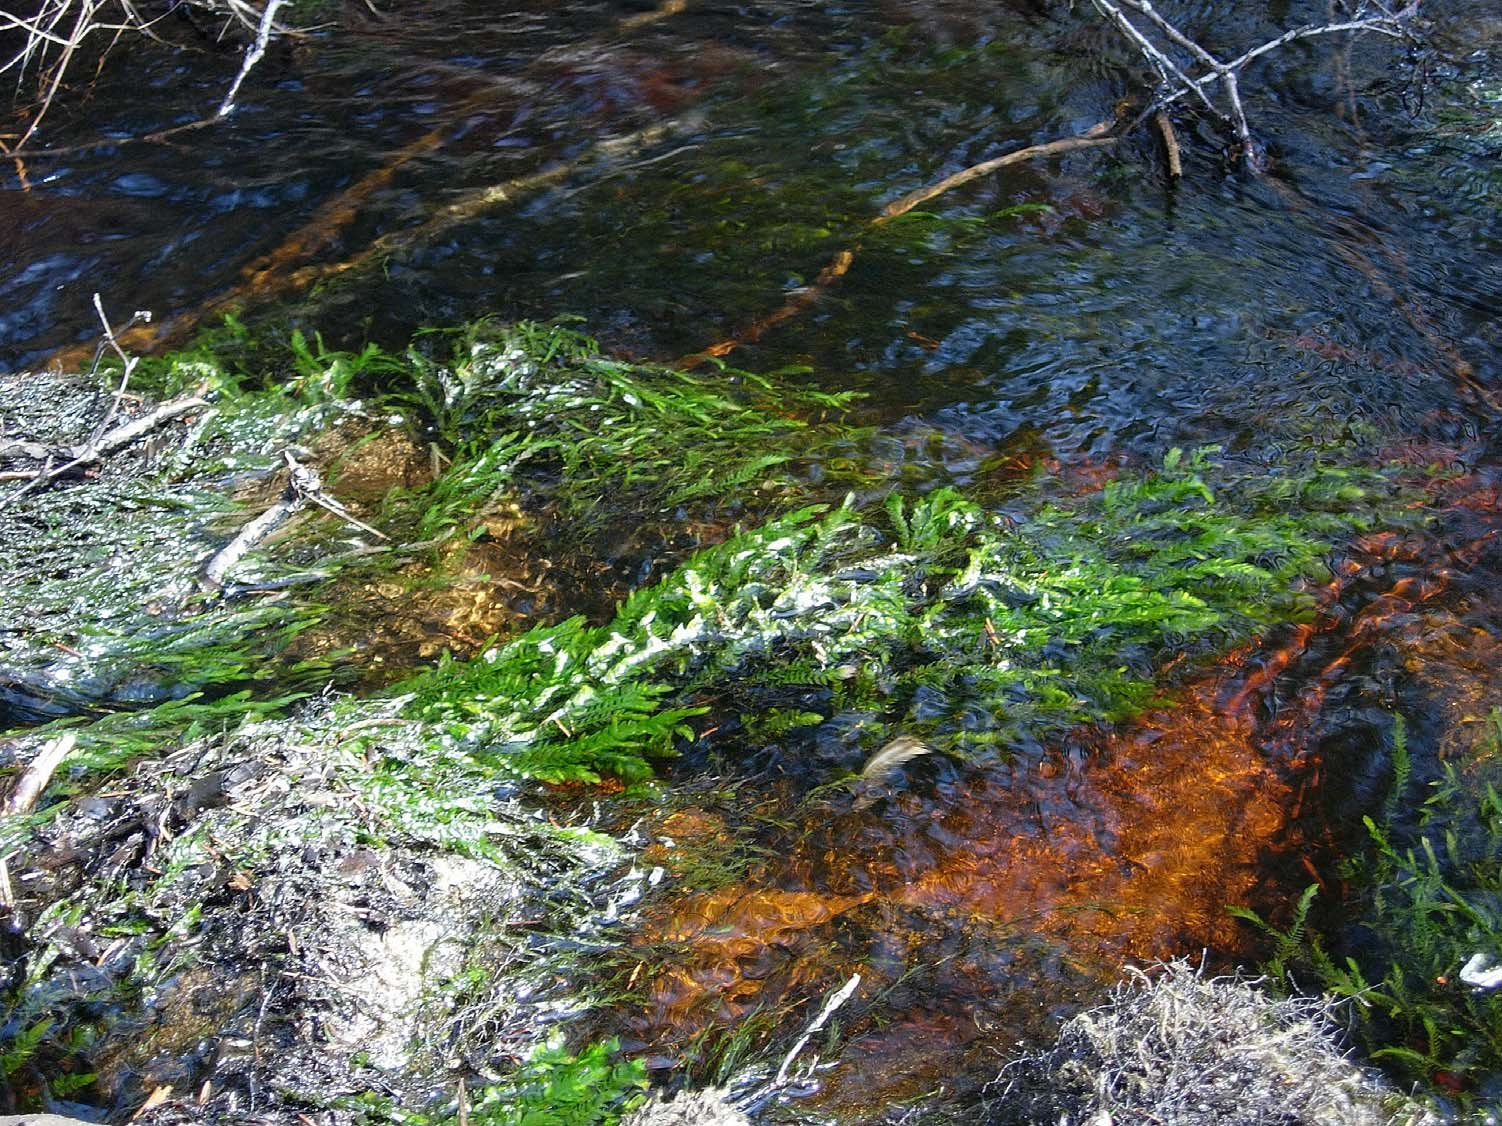 Luonnontilaisen puron sorapohja on puhdas ja kivissä kasvaa pitkiä